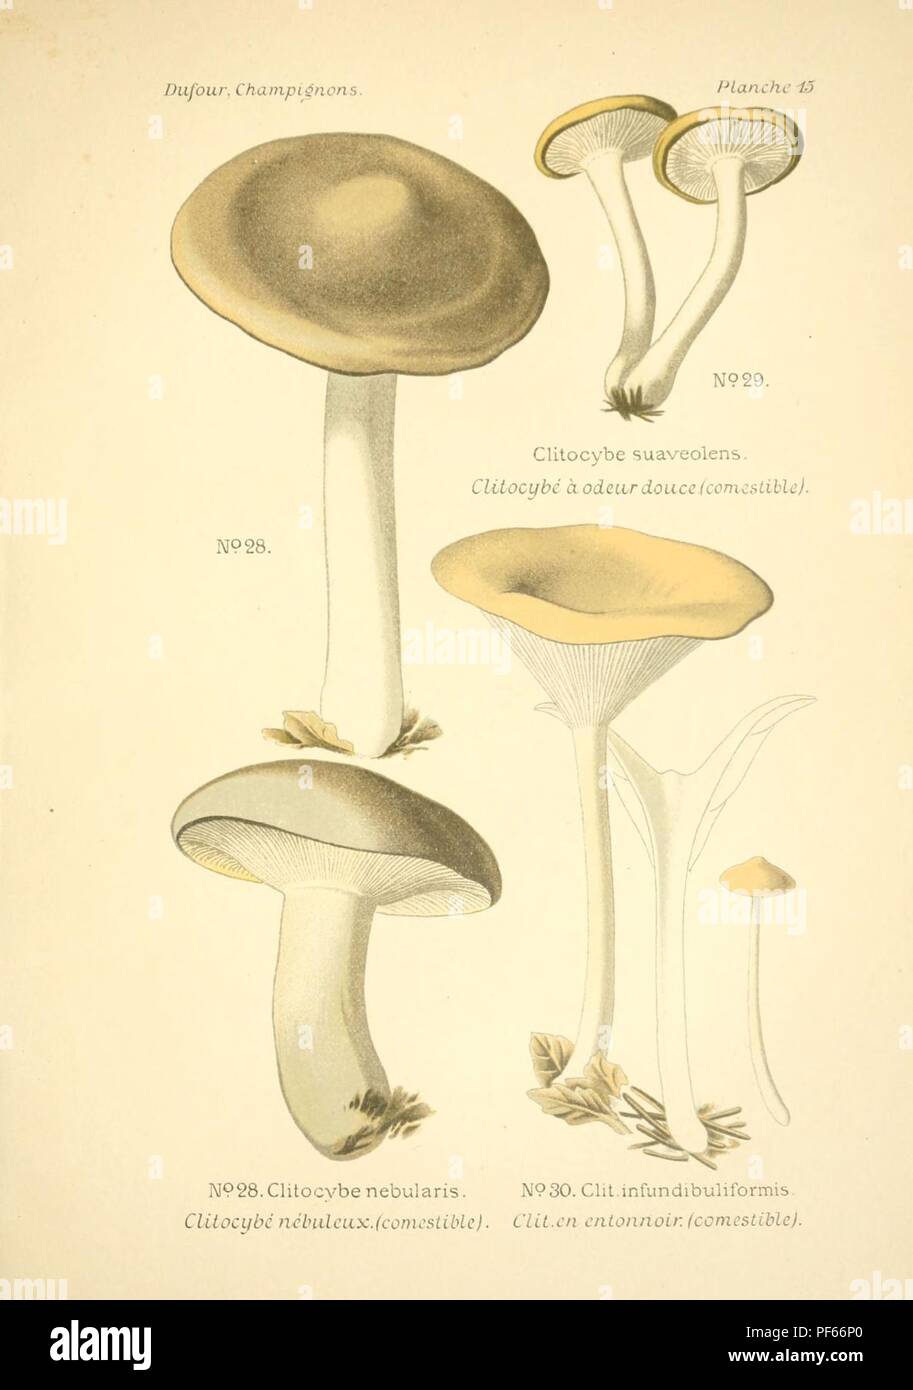 Atlas des champignon comestibles et vénéneux (Planche 15) Foto Stock